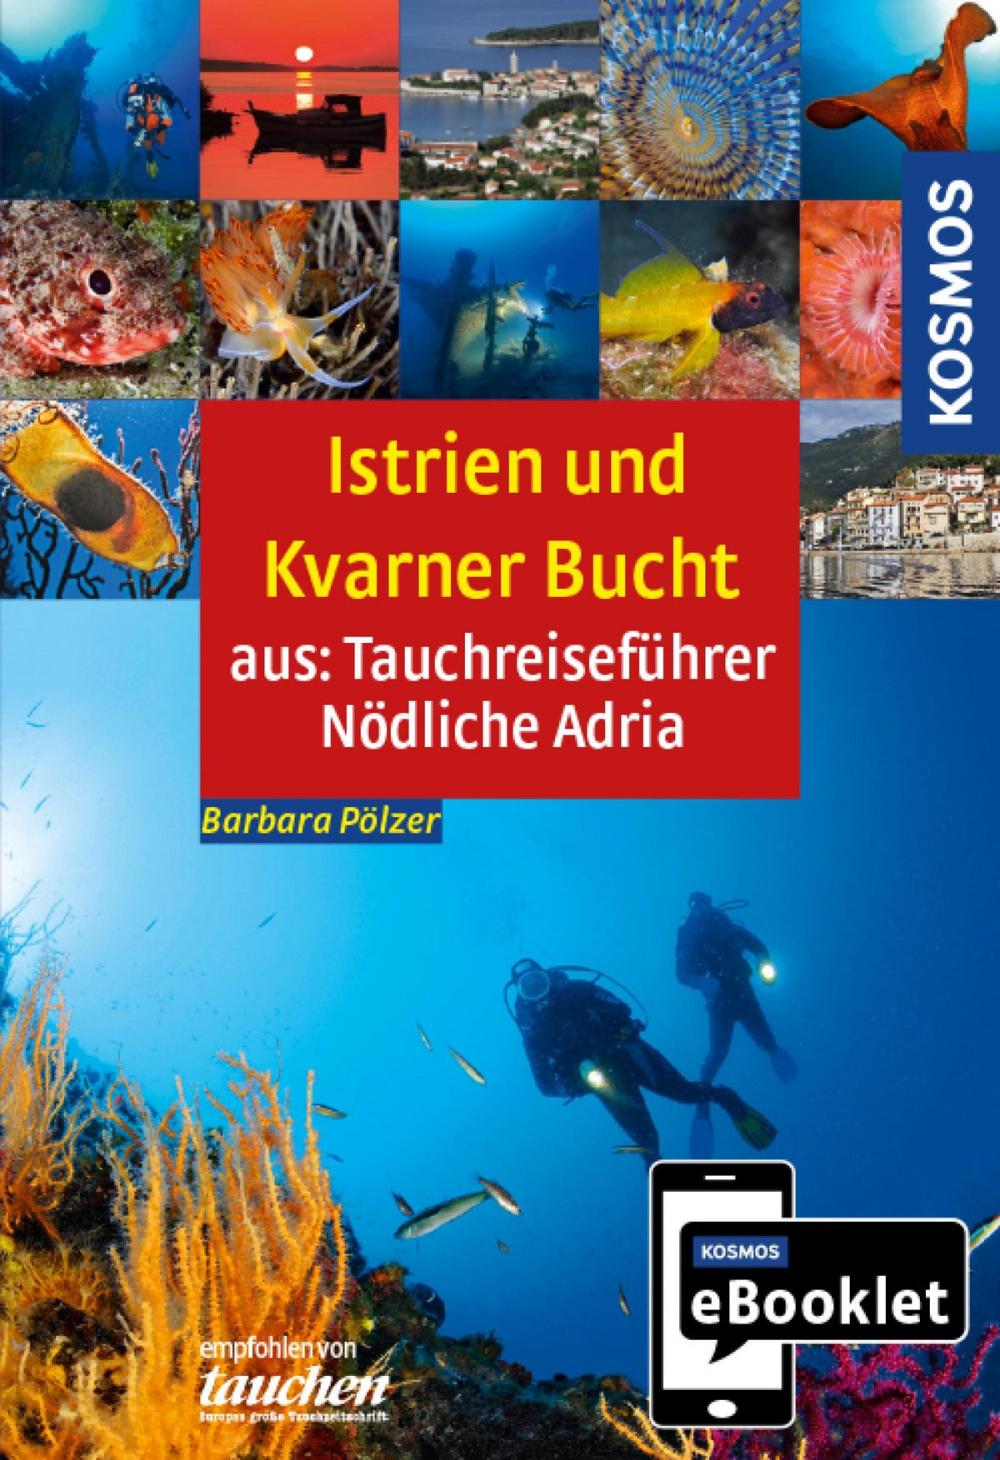 Big bigCover of KOSMOS eBooklet: Tauchreiseführer Istrien und Kvarner Bucht